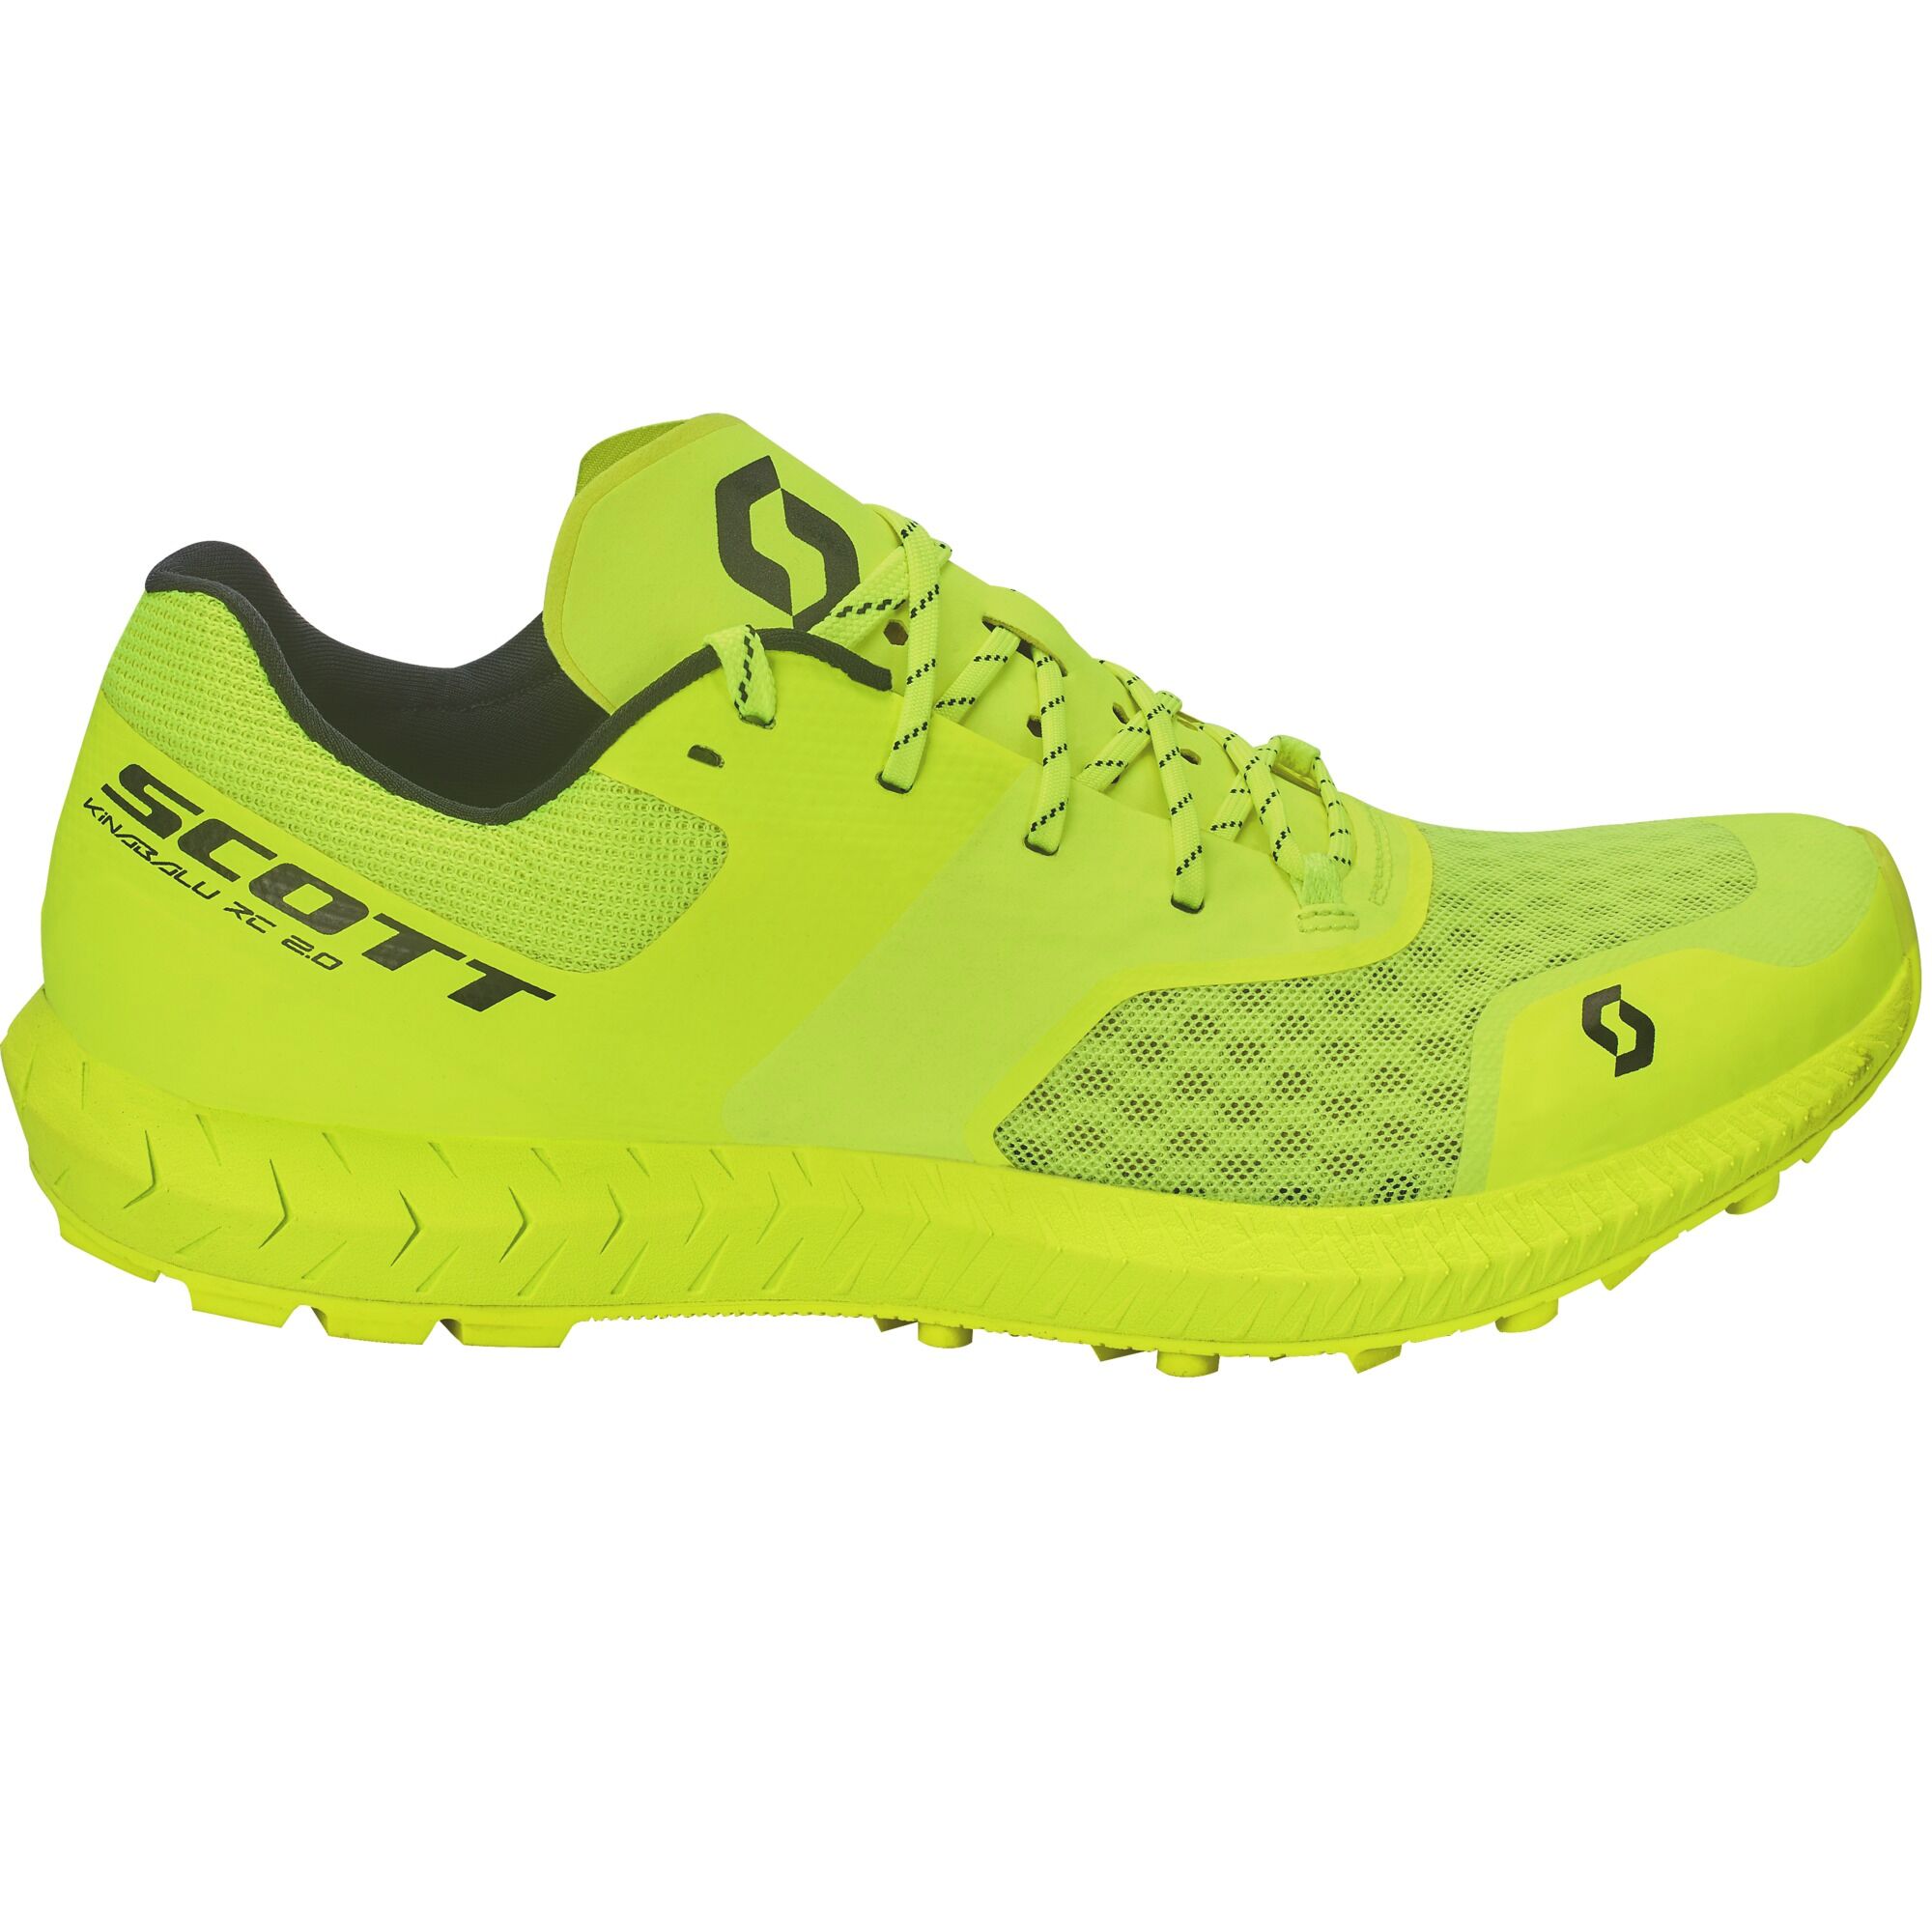 Scott Kinabalu RC 2.0 - Trail running shoes - Women's